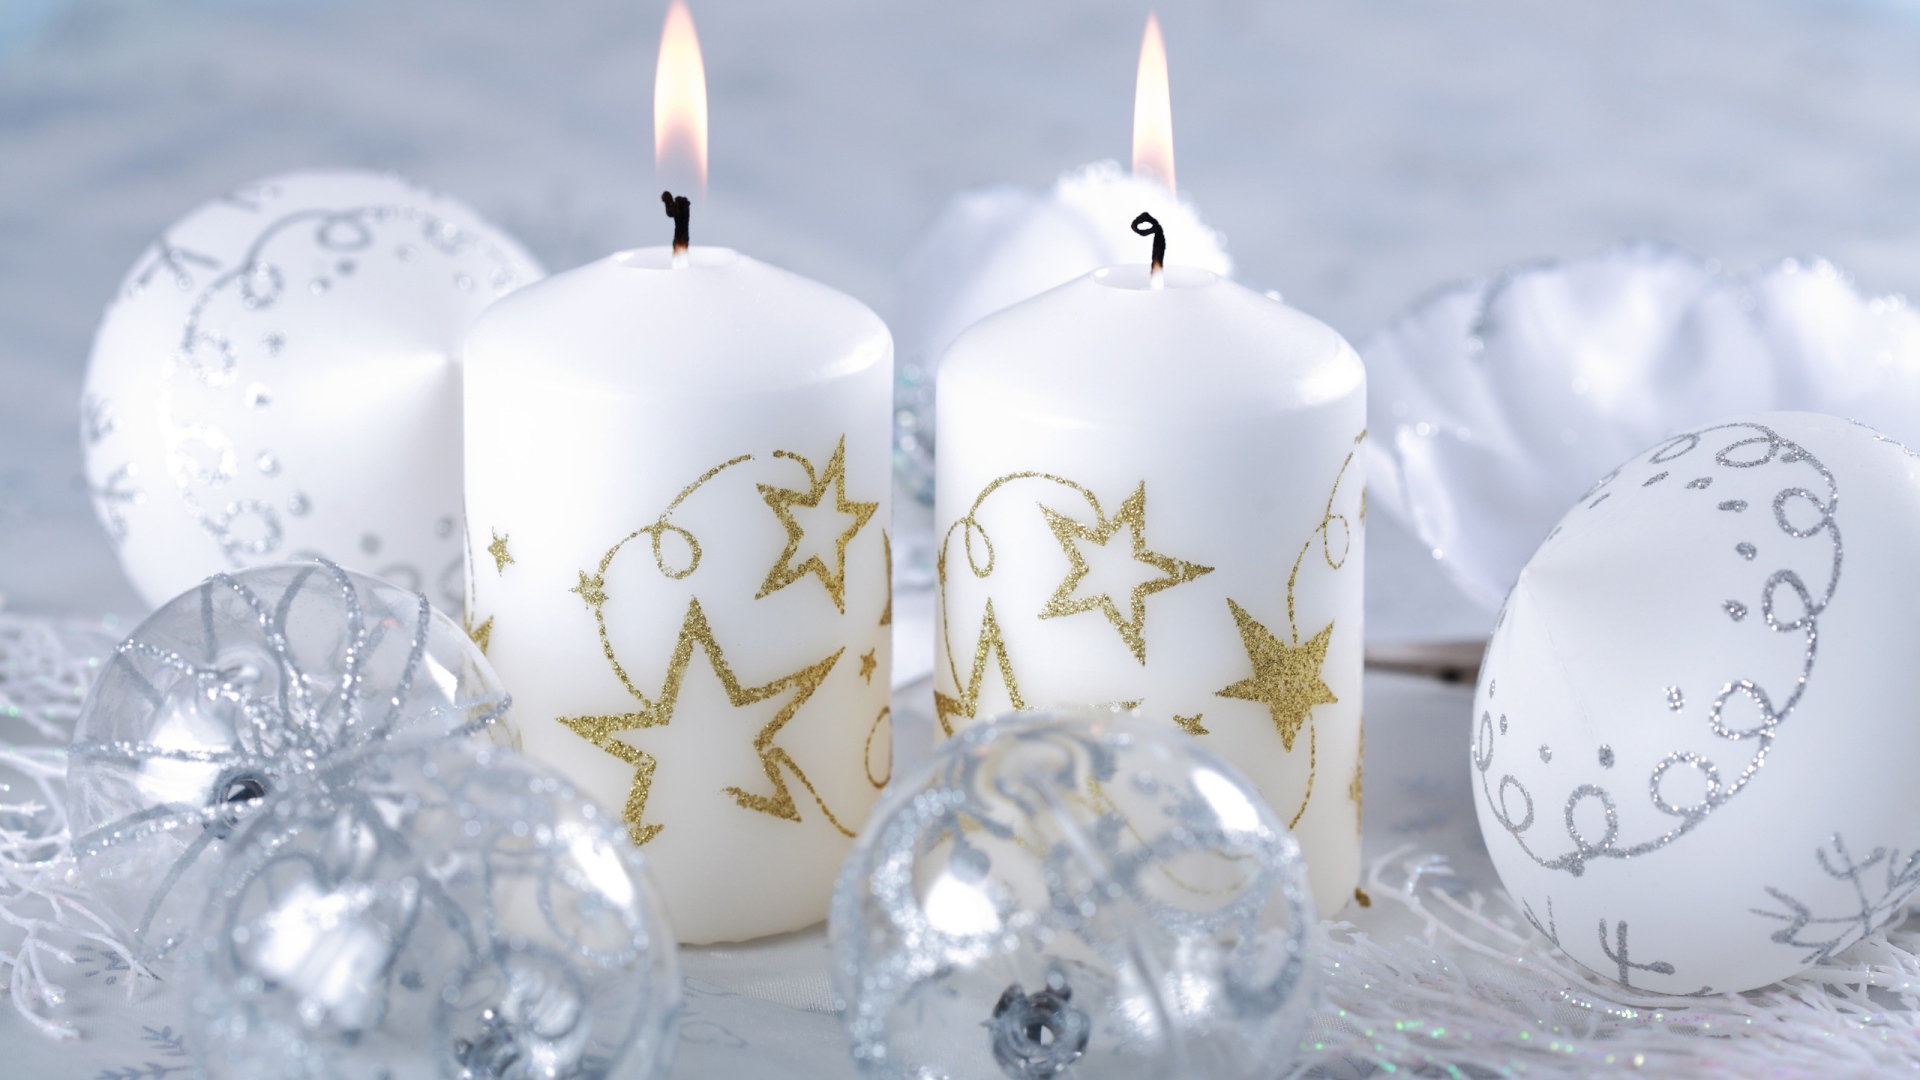 Burning white candles on Christmas